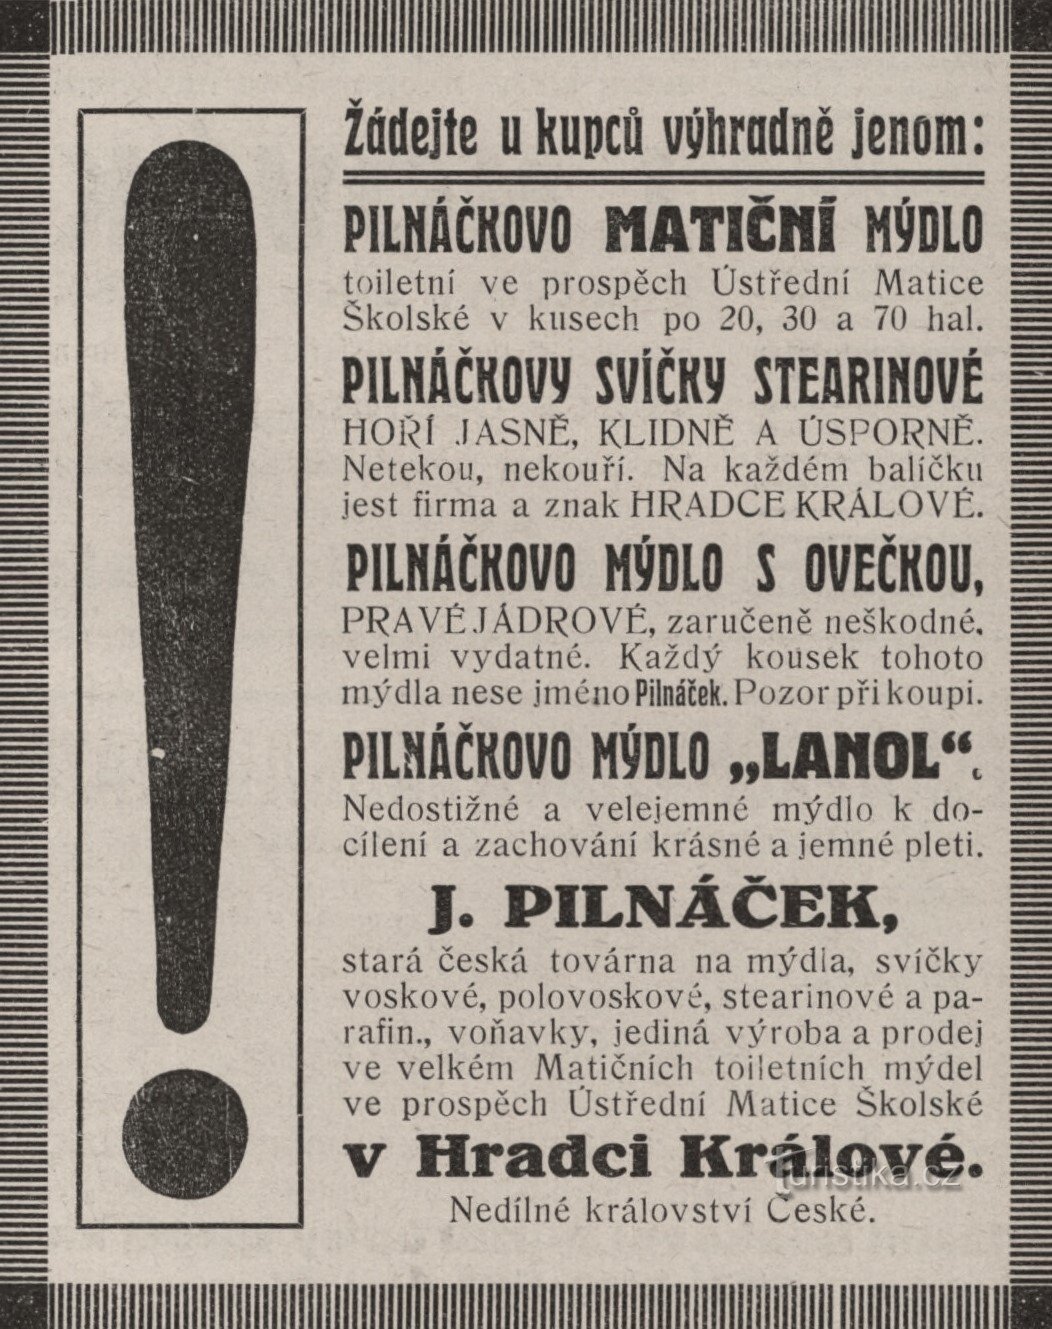 Quảng cáo của nhà máy Pilnáček từ năm 1912